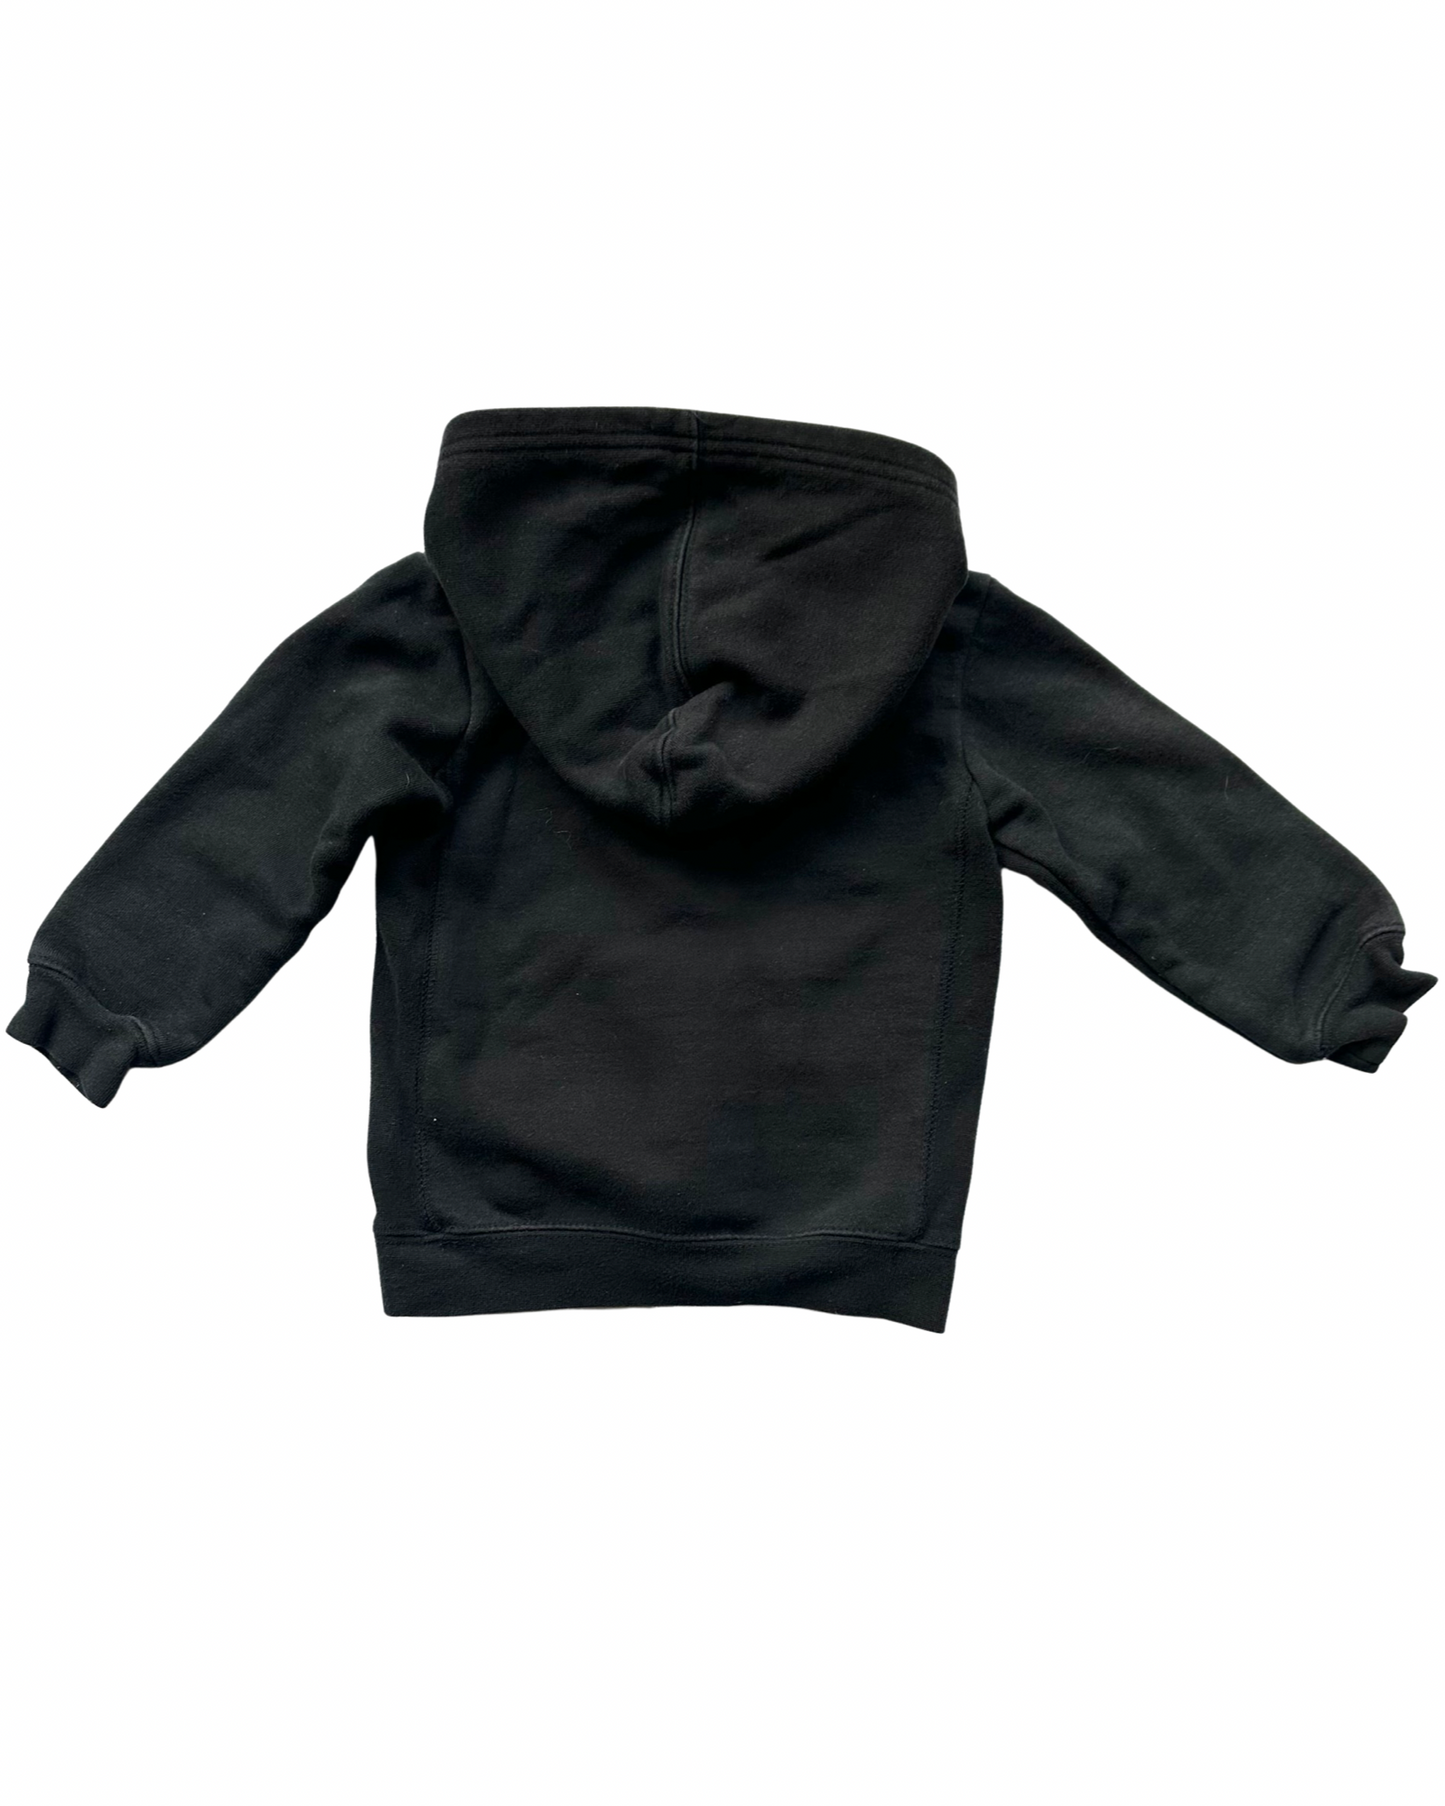 Vintage Champion hoodie in black (2-3yrs)